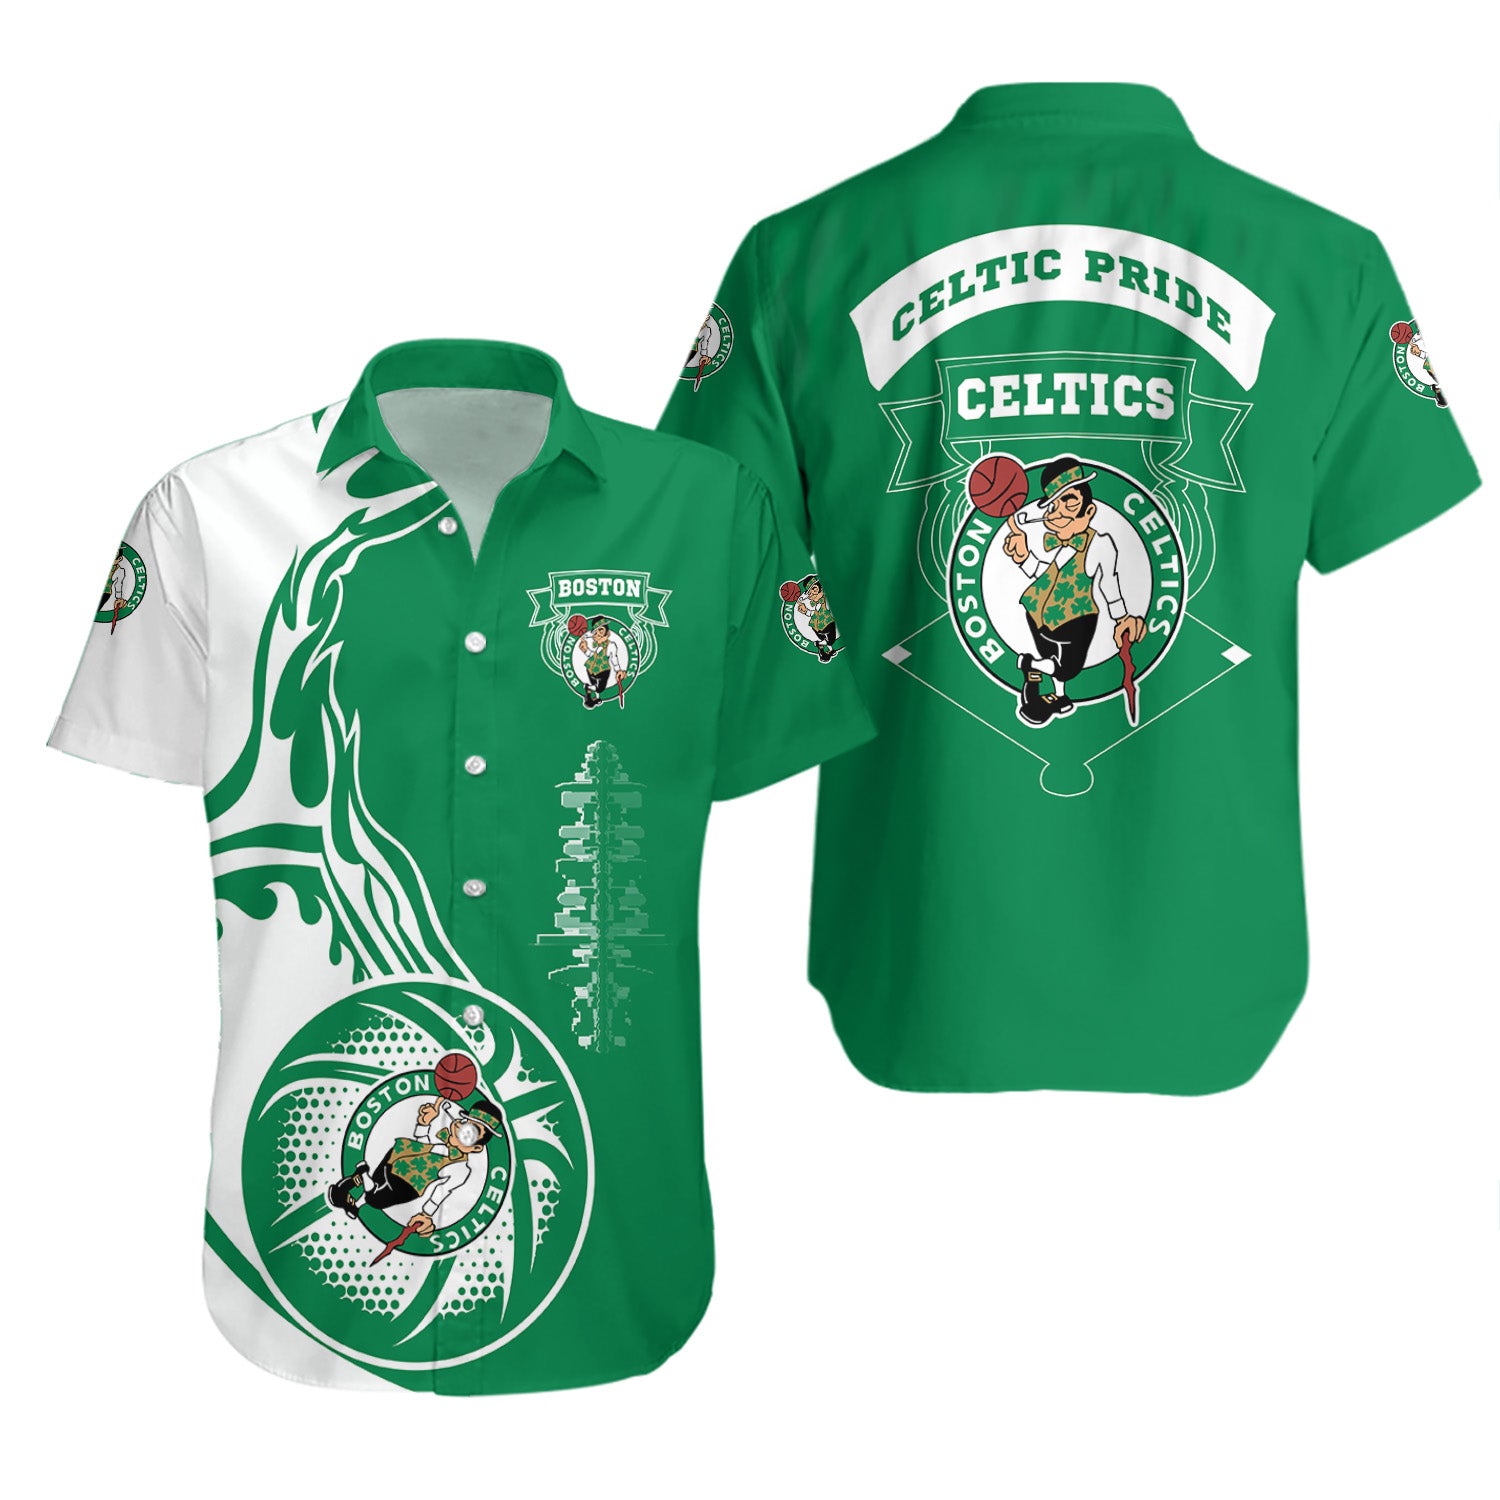 Boston Celtics Hawaiian Shirt Set Basketball Celtic Pride - NBA 2